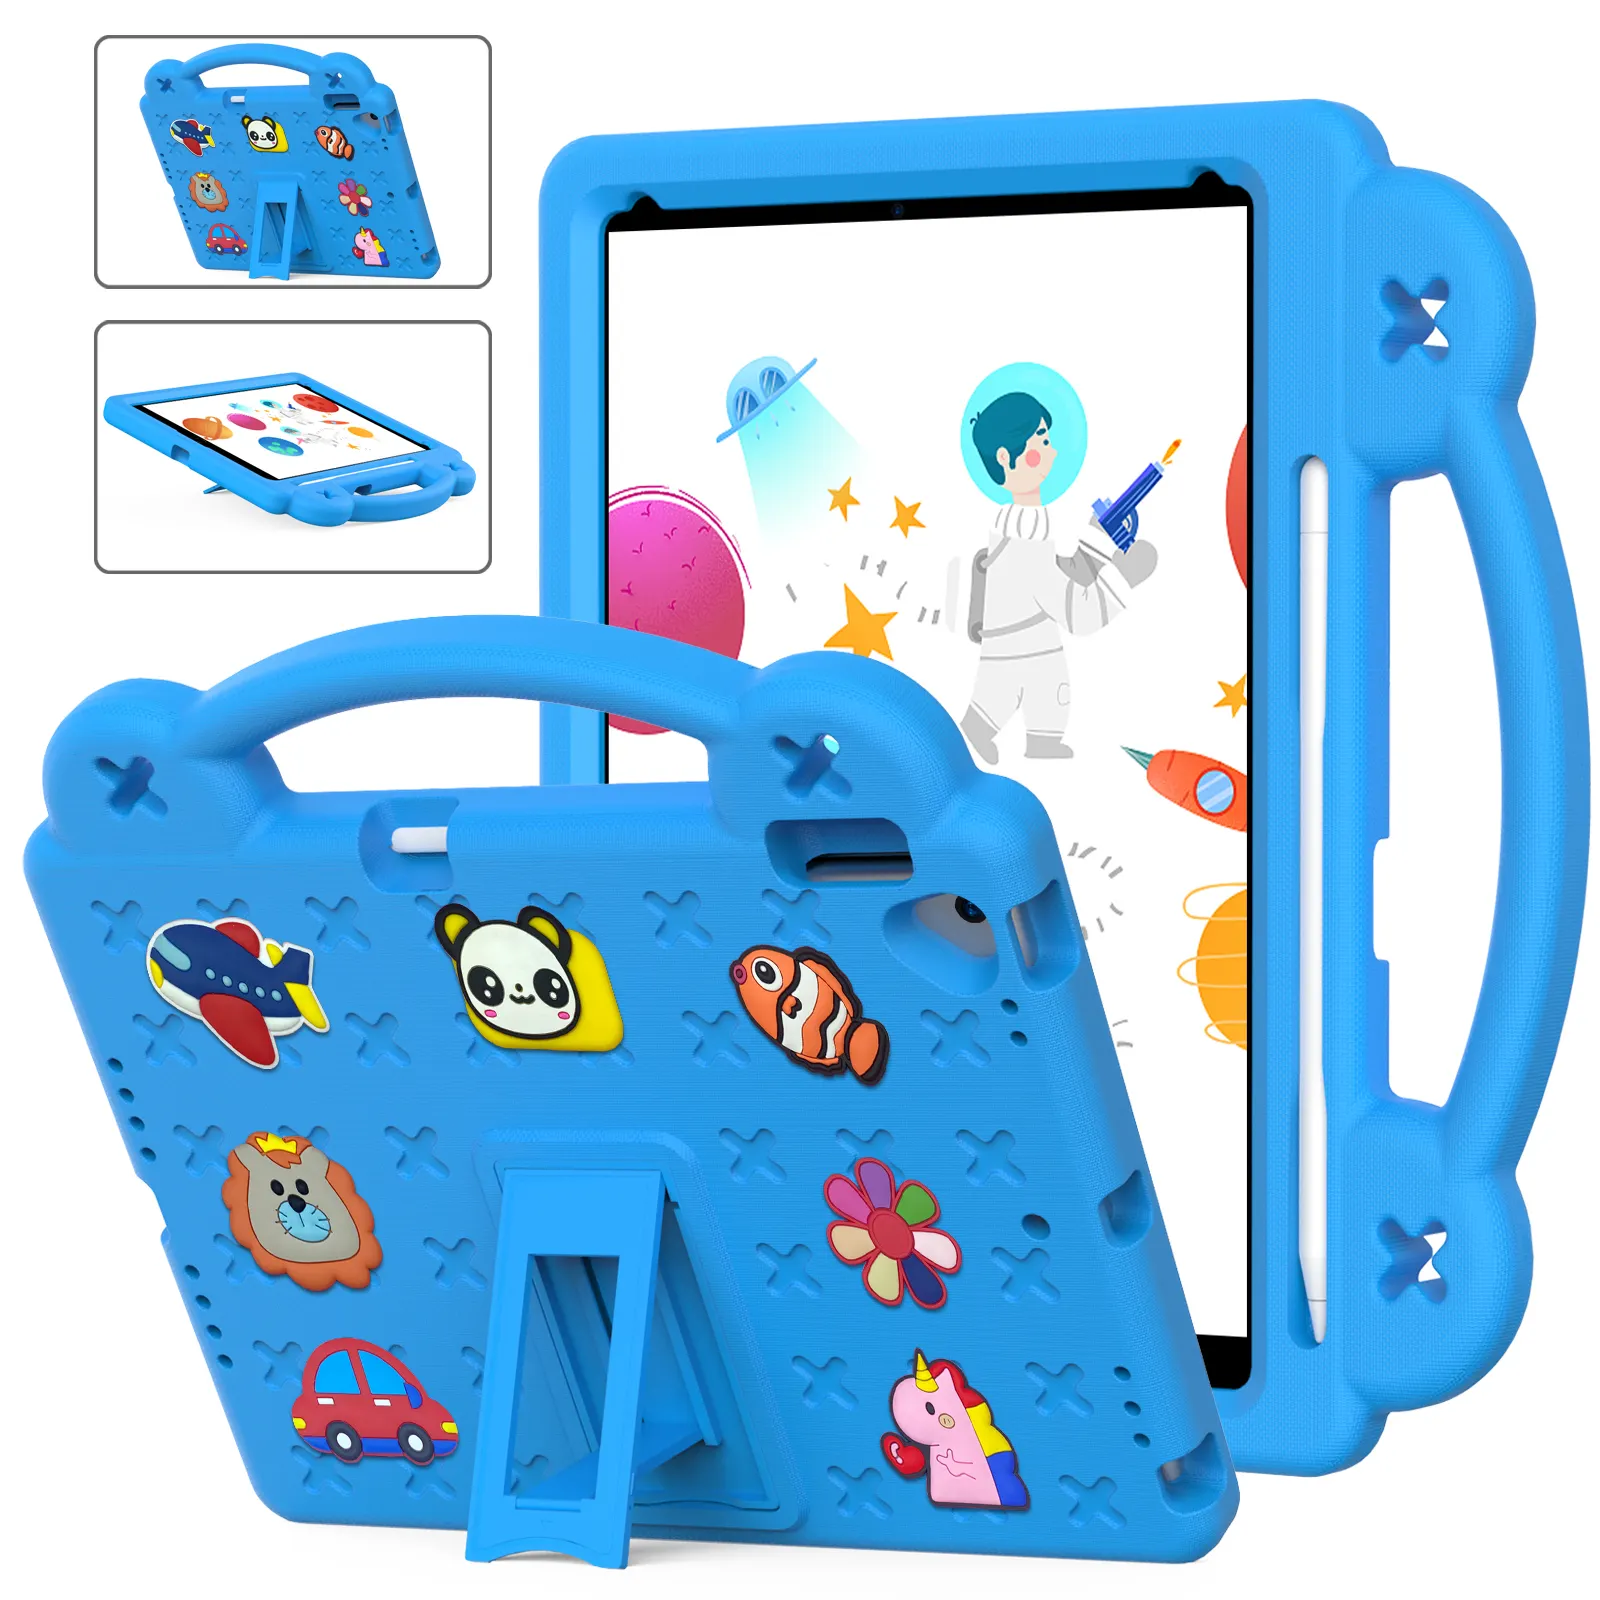 Casing penutup Tablet anak-anak, desain cantik busa EVA tahan guncangan untuk ipad air 4 pro 10.2 10.5 11 inci